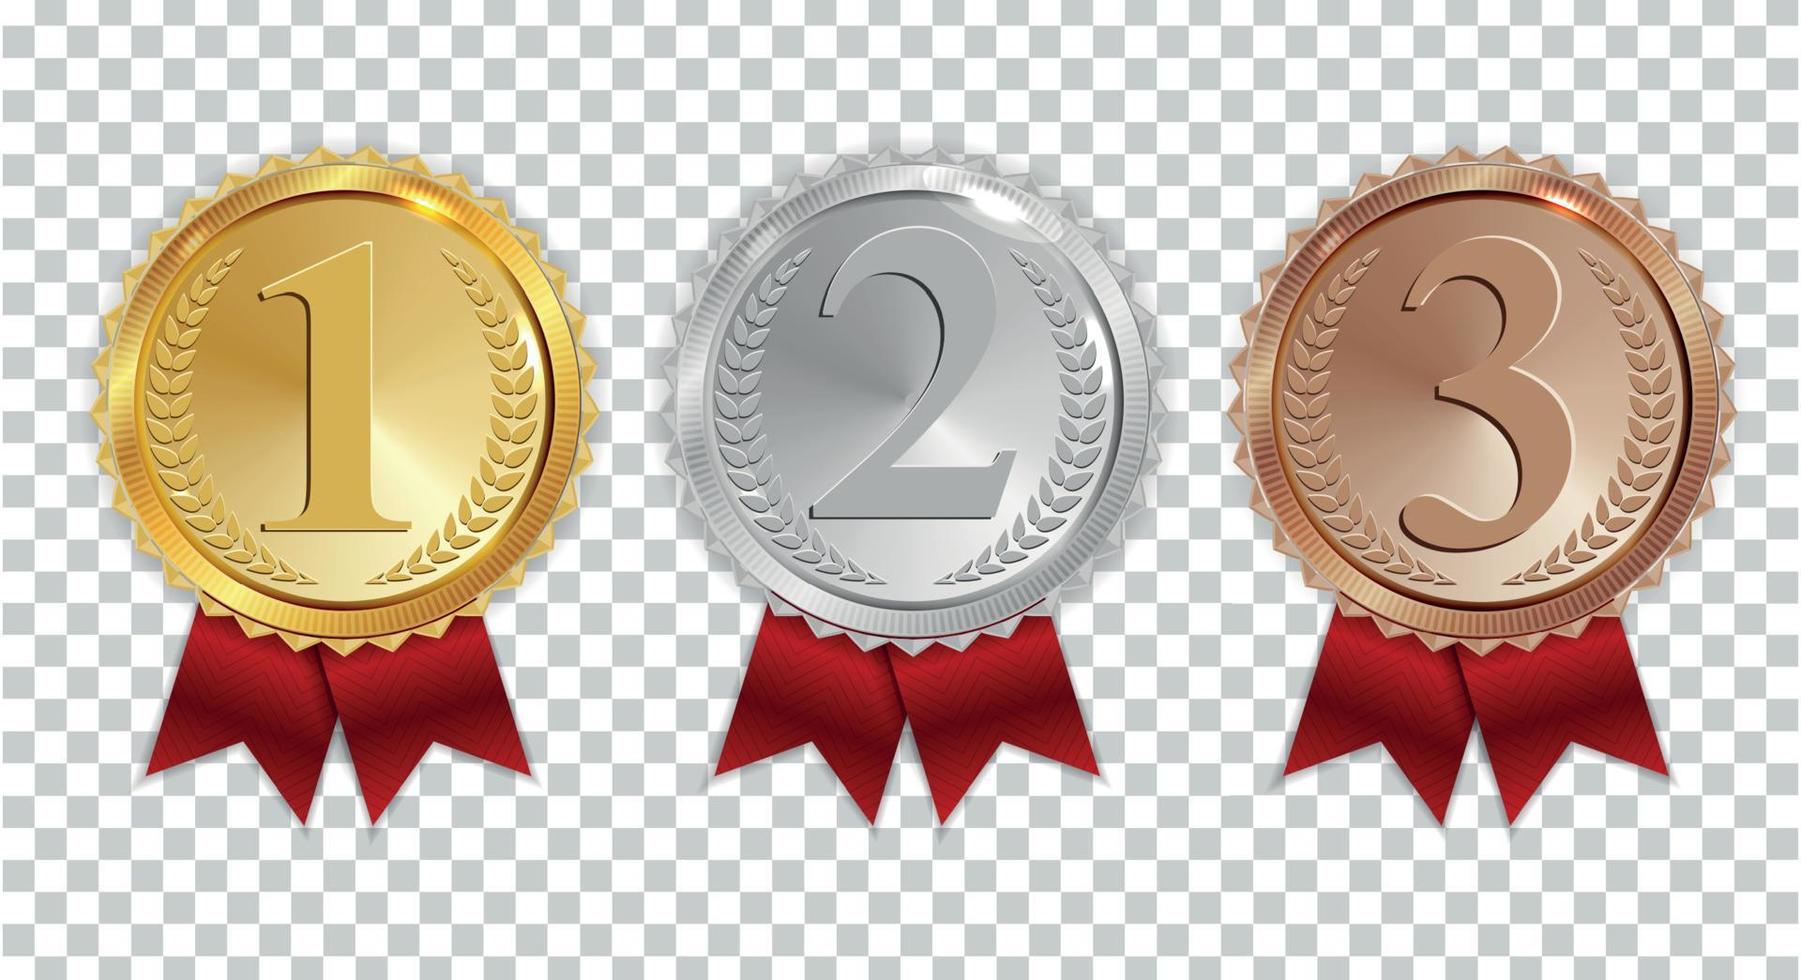 Champion Gold-, Silber- und Bronzemedaille mit rotem Bandsymbol Zeichen erster, zweiter und dritter Platz Sammlungssatz einzeln auf transparentem Hintergrund. Vektor-Illustration vektor